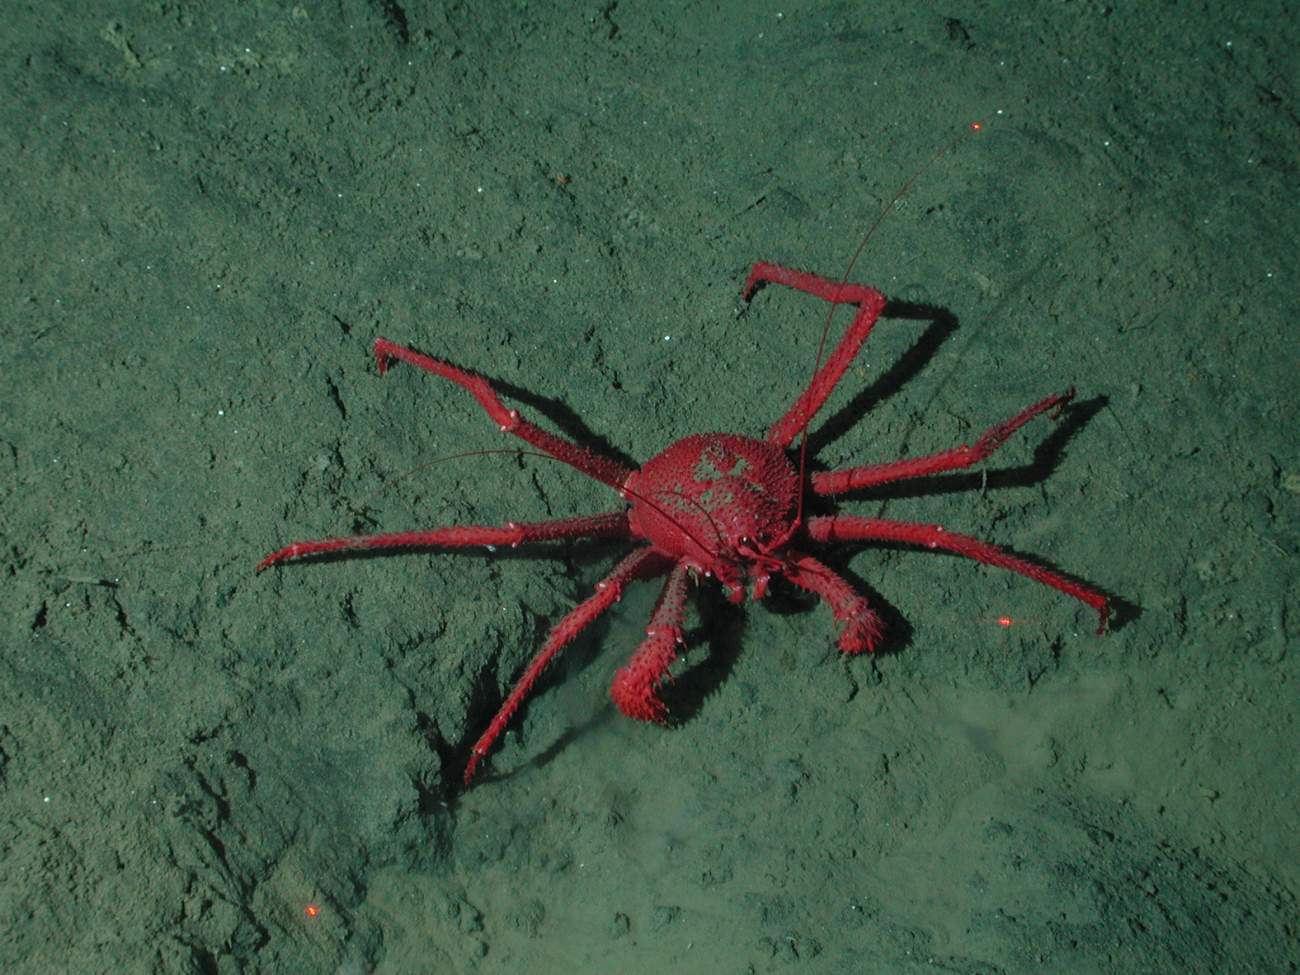 Crab on seafloor